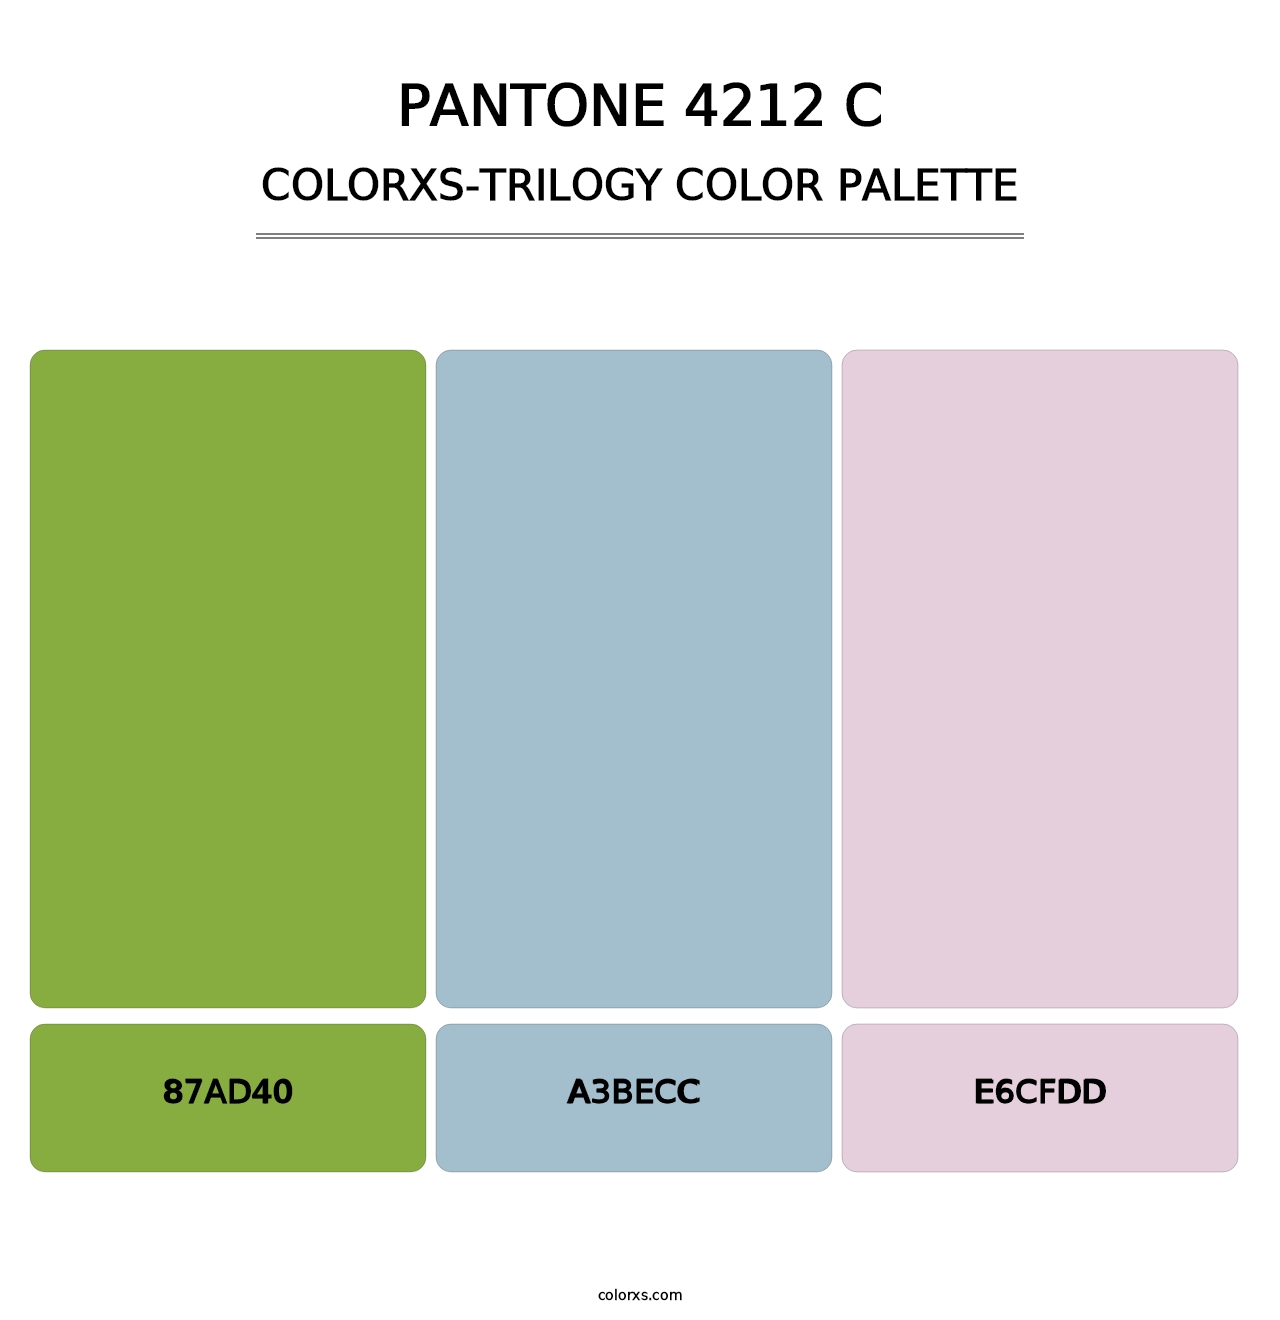 PANTONE 4212 C - Colorxs Trilogy Palette